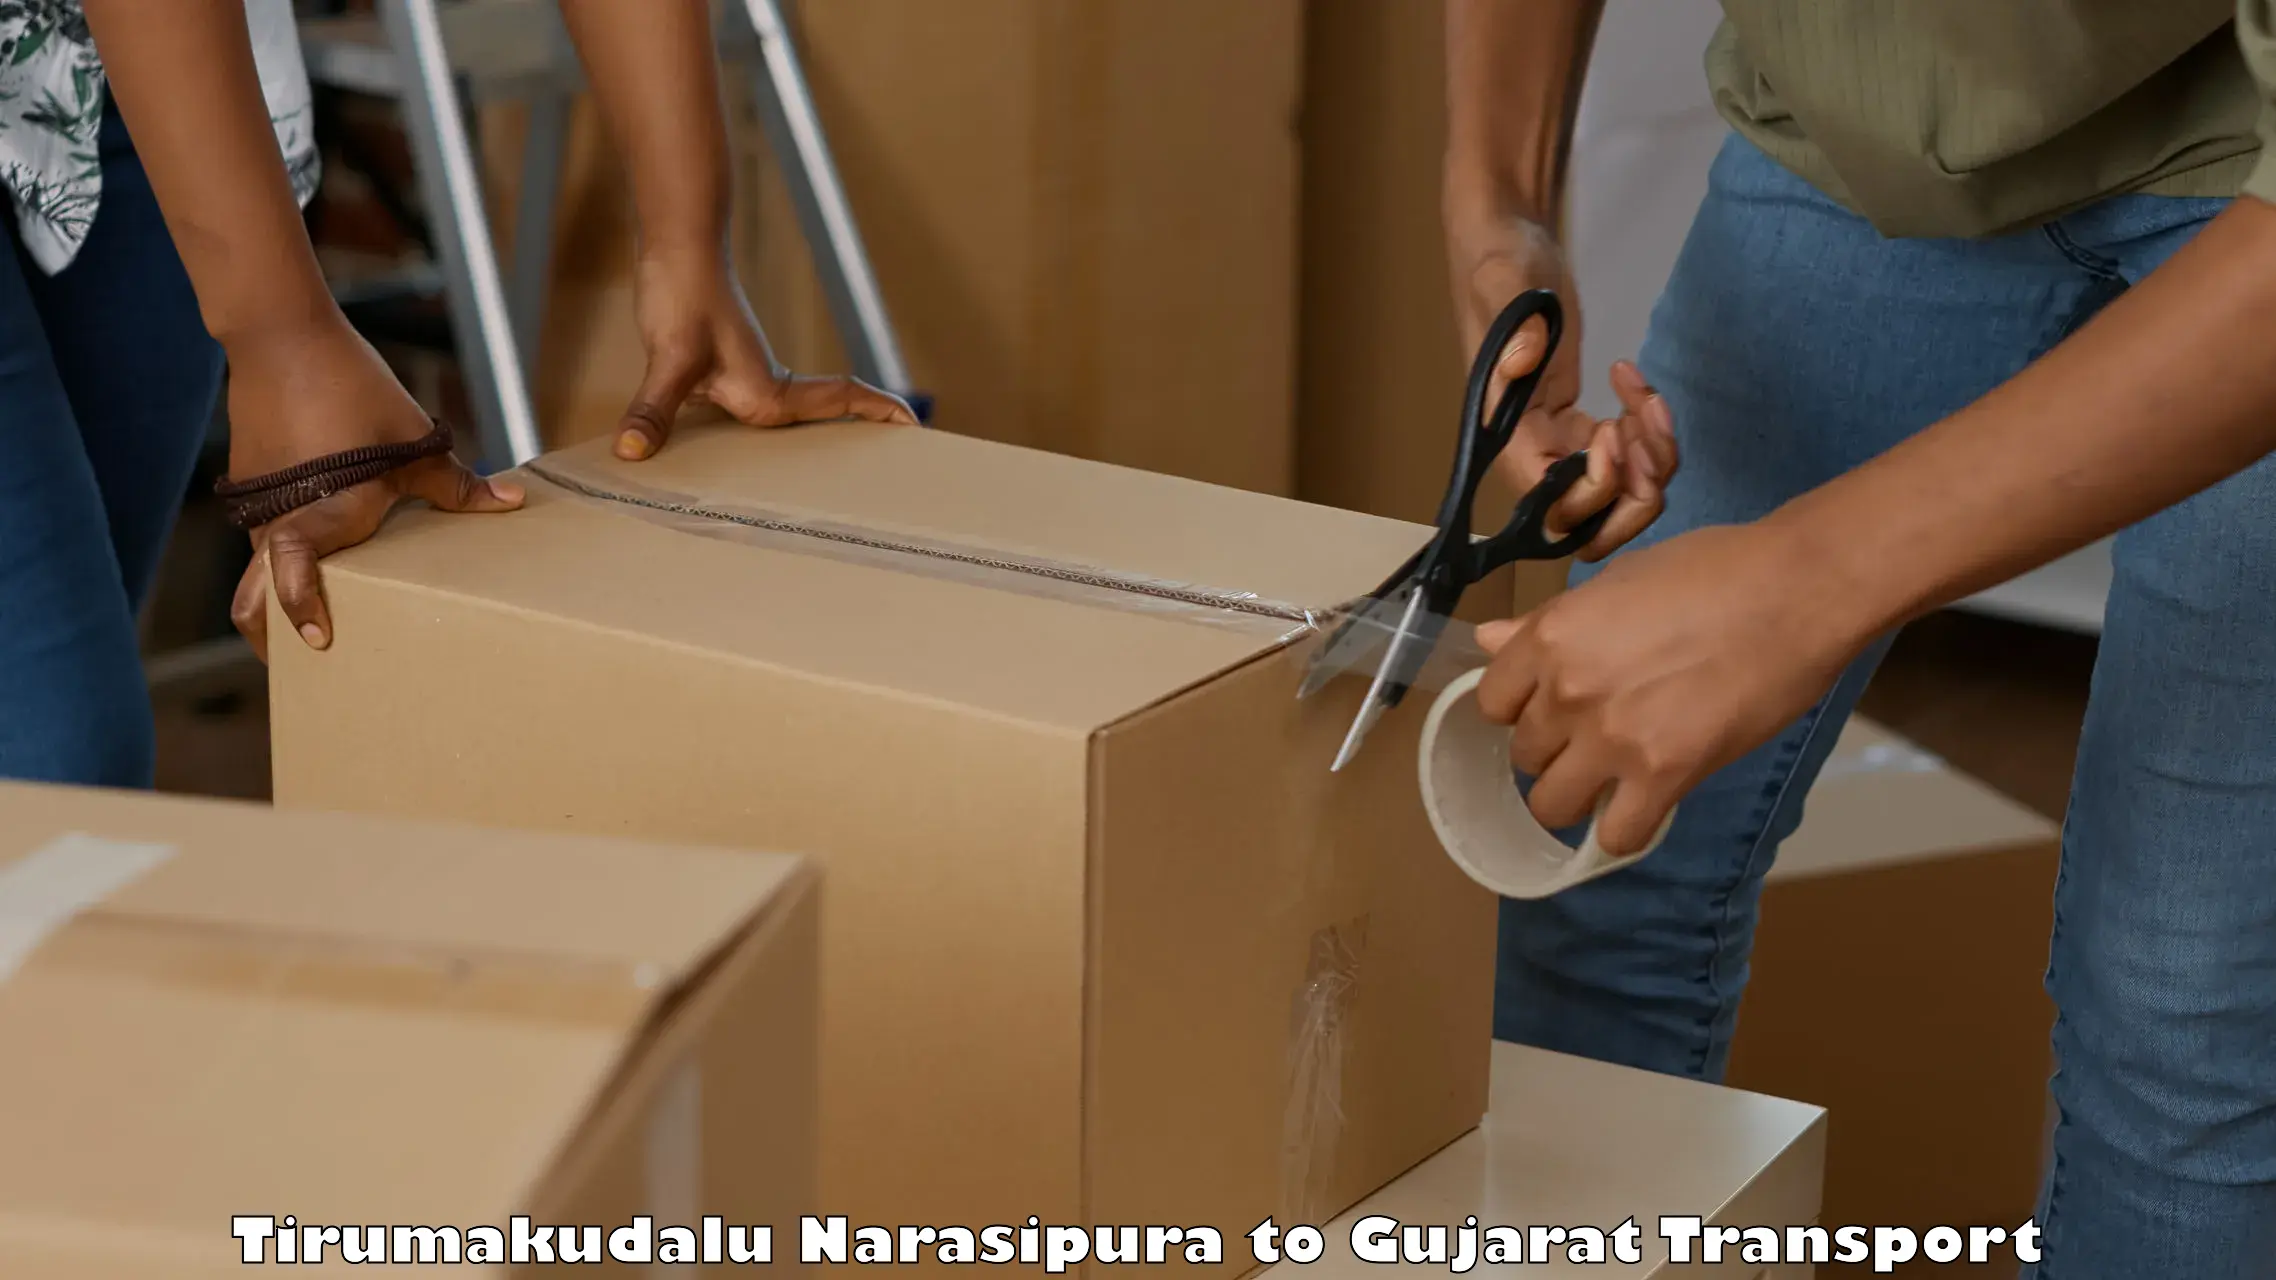 Furniture transport service Tirumakudalu Narasipura to Jhalod